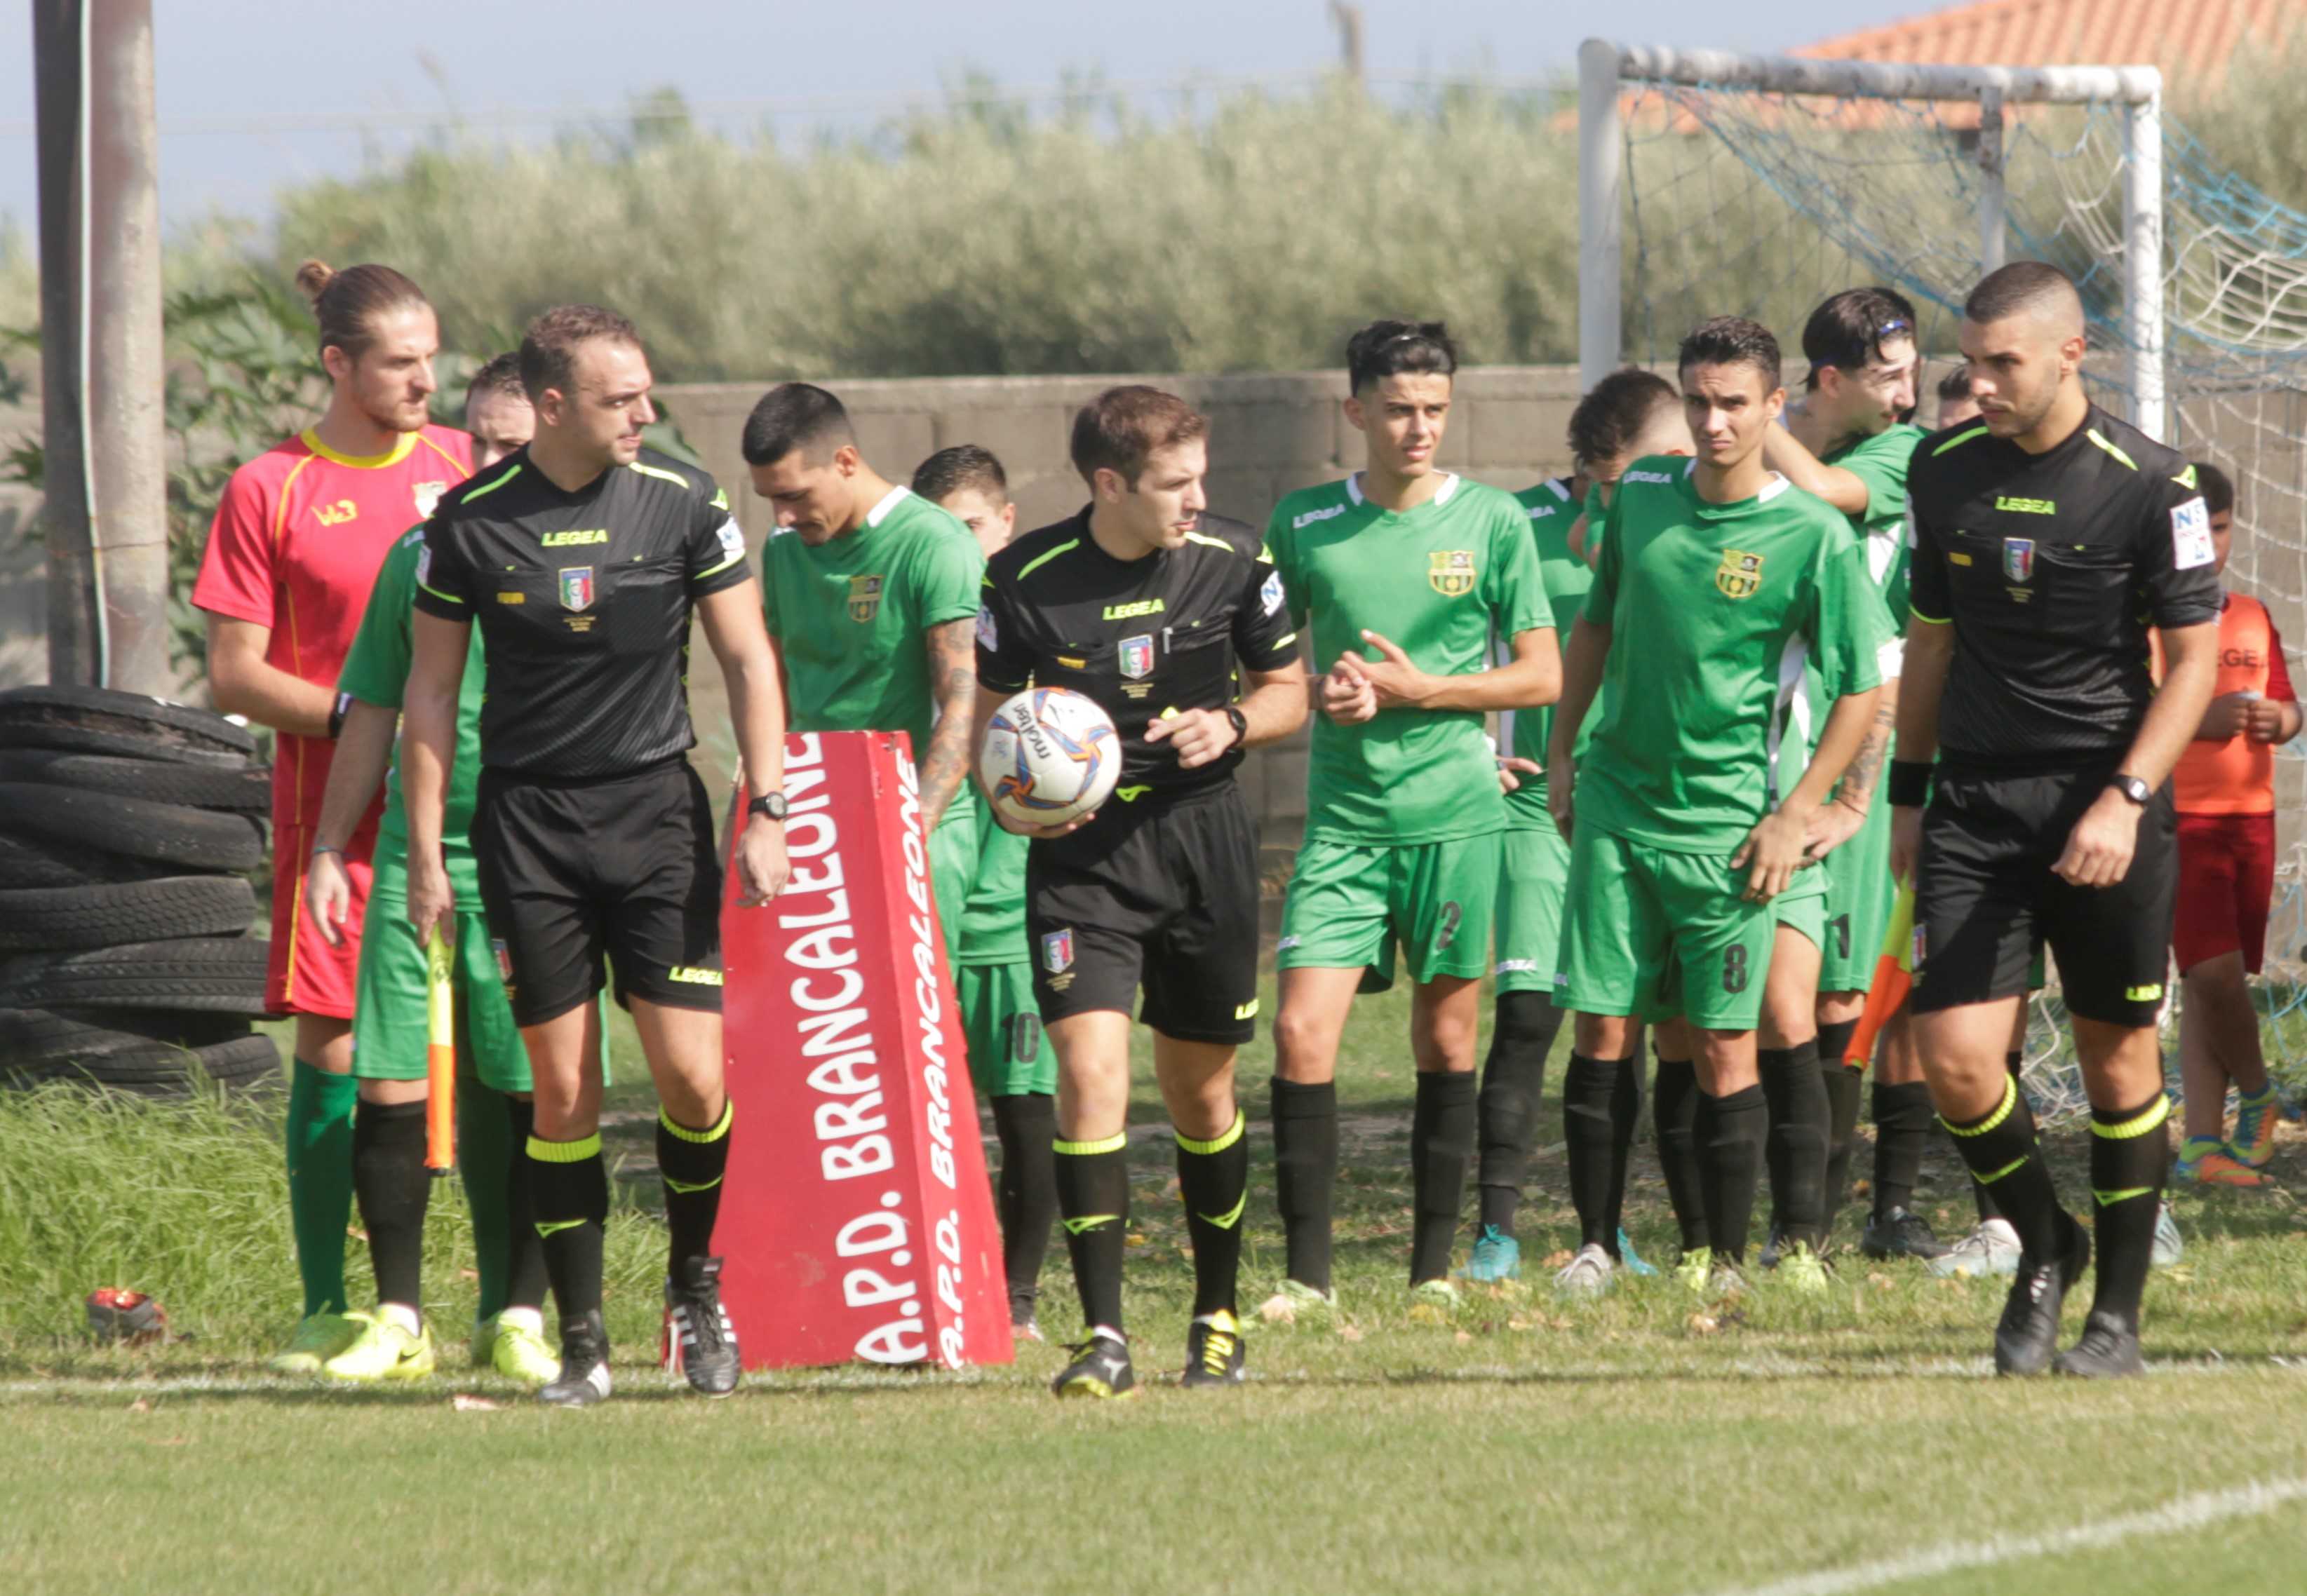 Promozione girone B-Calcio: buona la prima per l'Asd Brancaleone (2-0)!